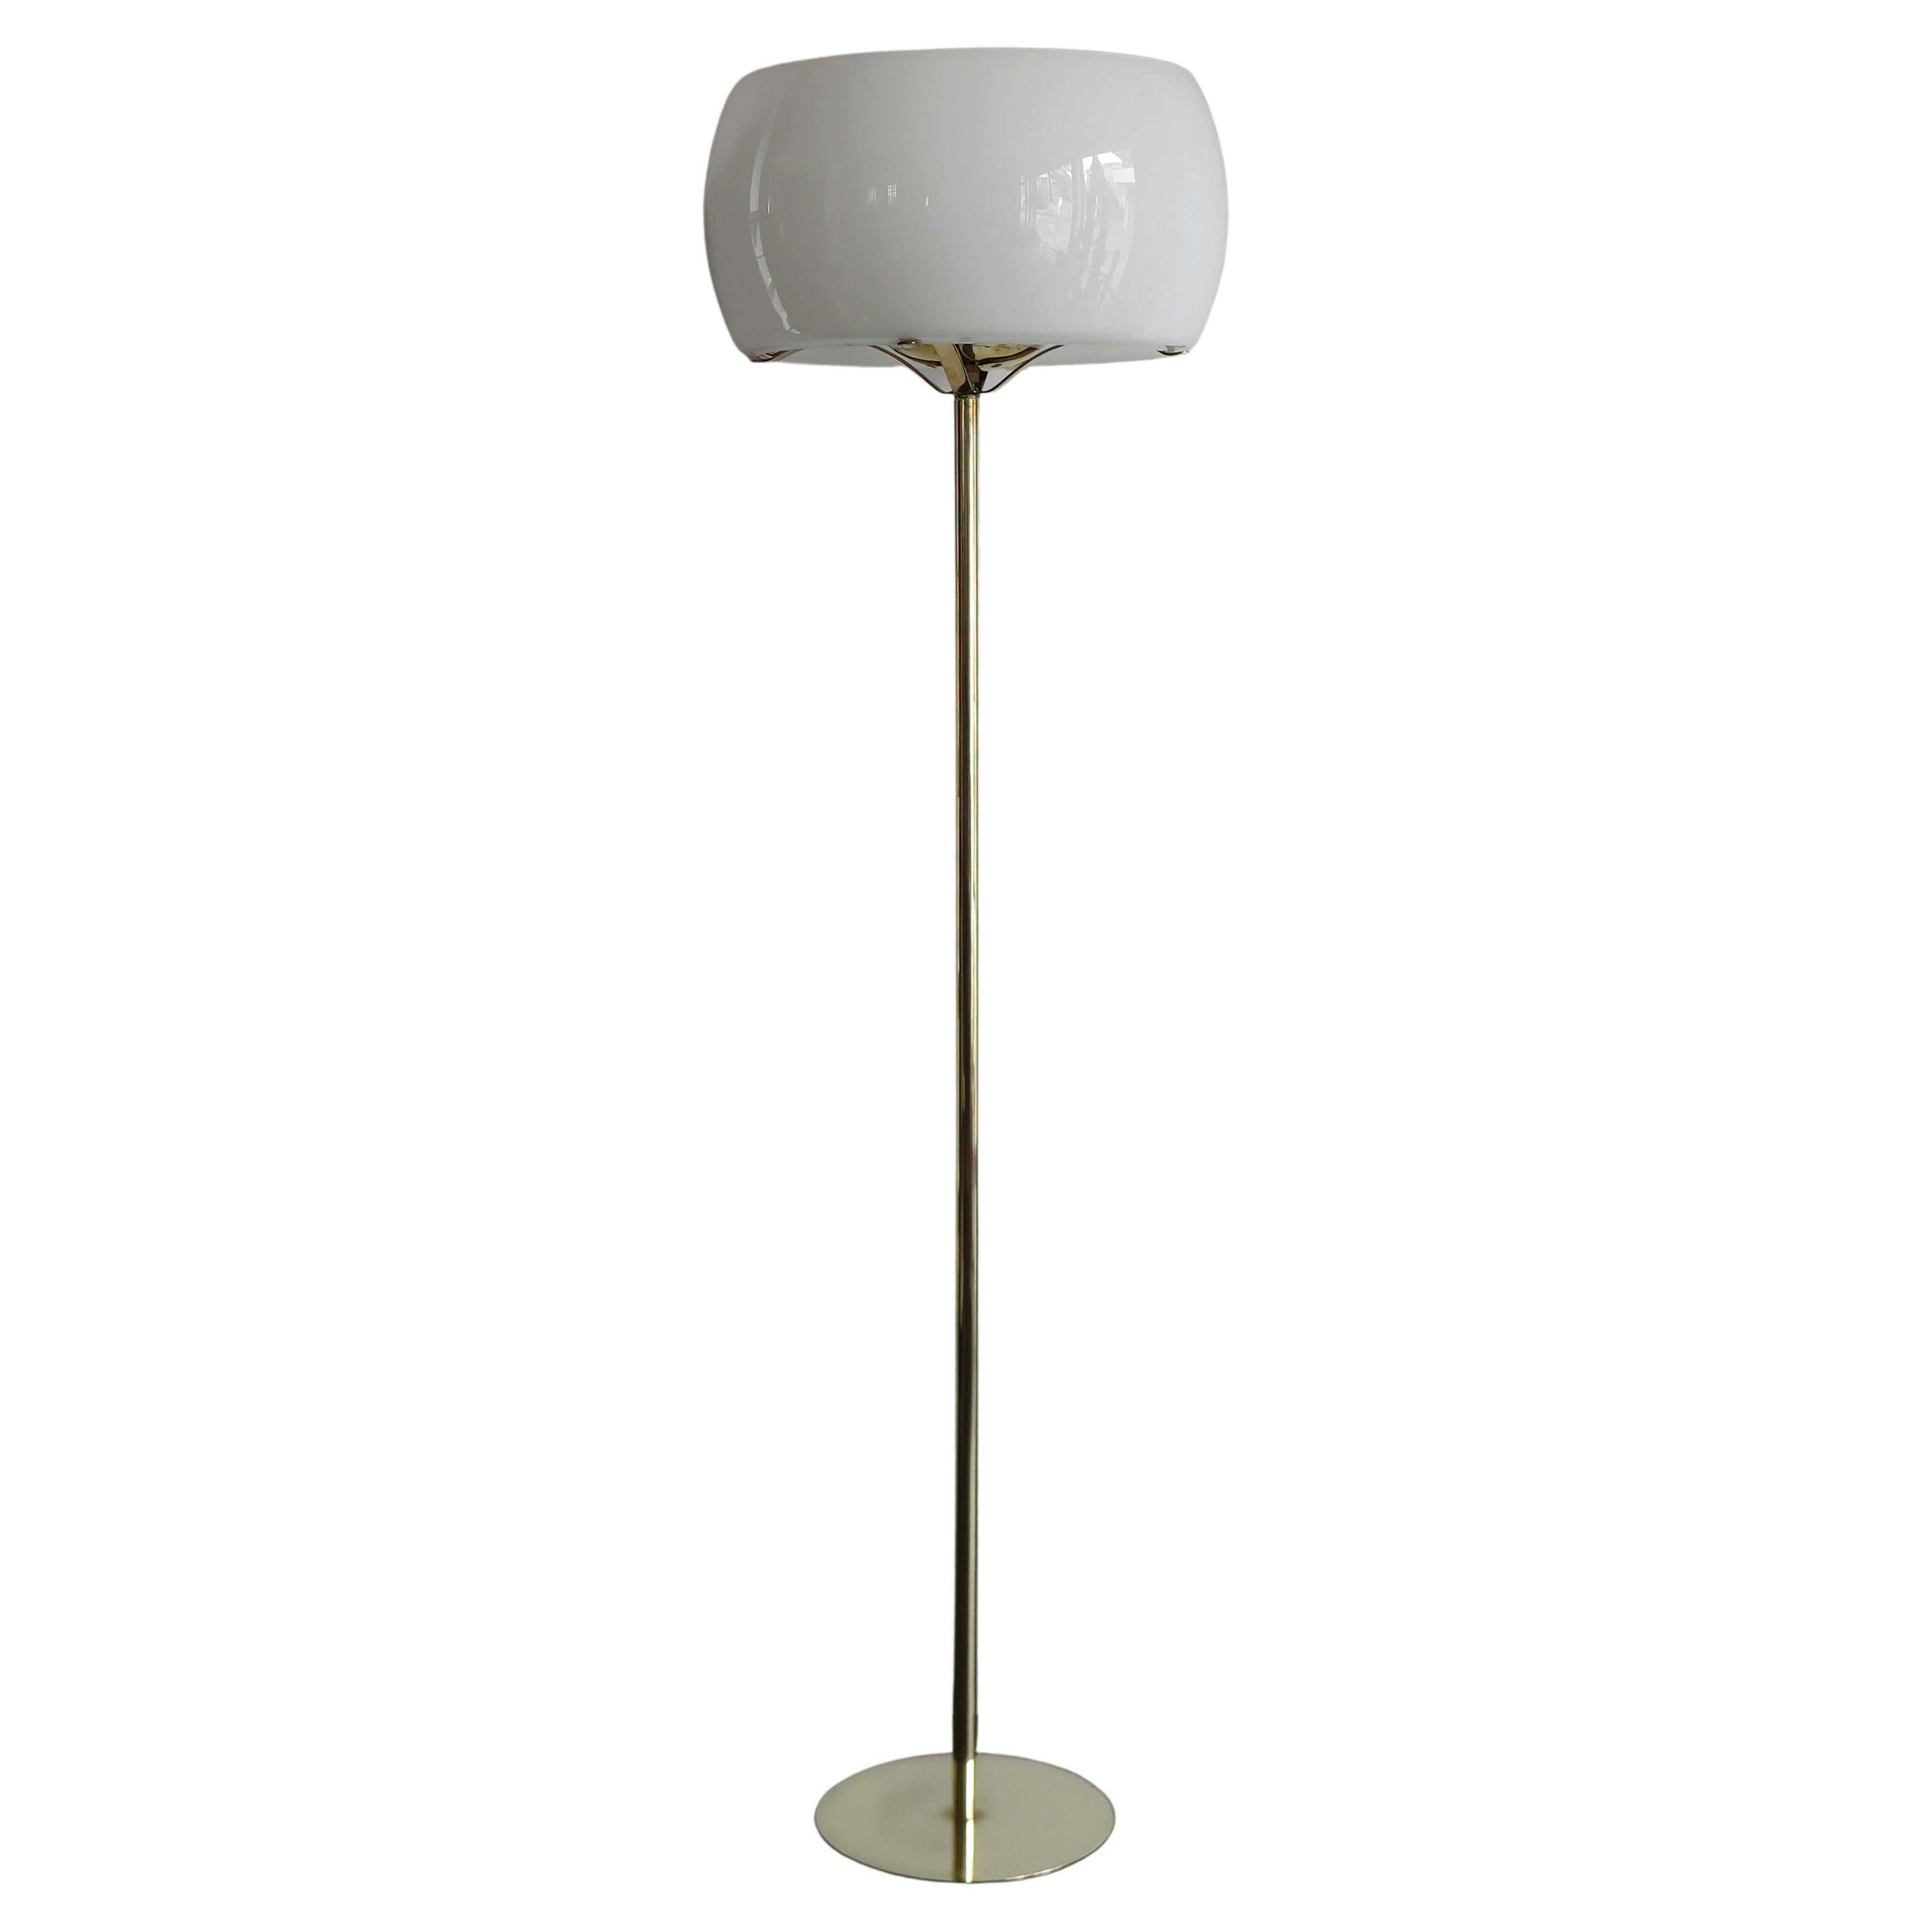 Vico Magistretti Italian Clitunnio Brass Glass Floor Lamp for Artemide, 1960s